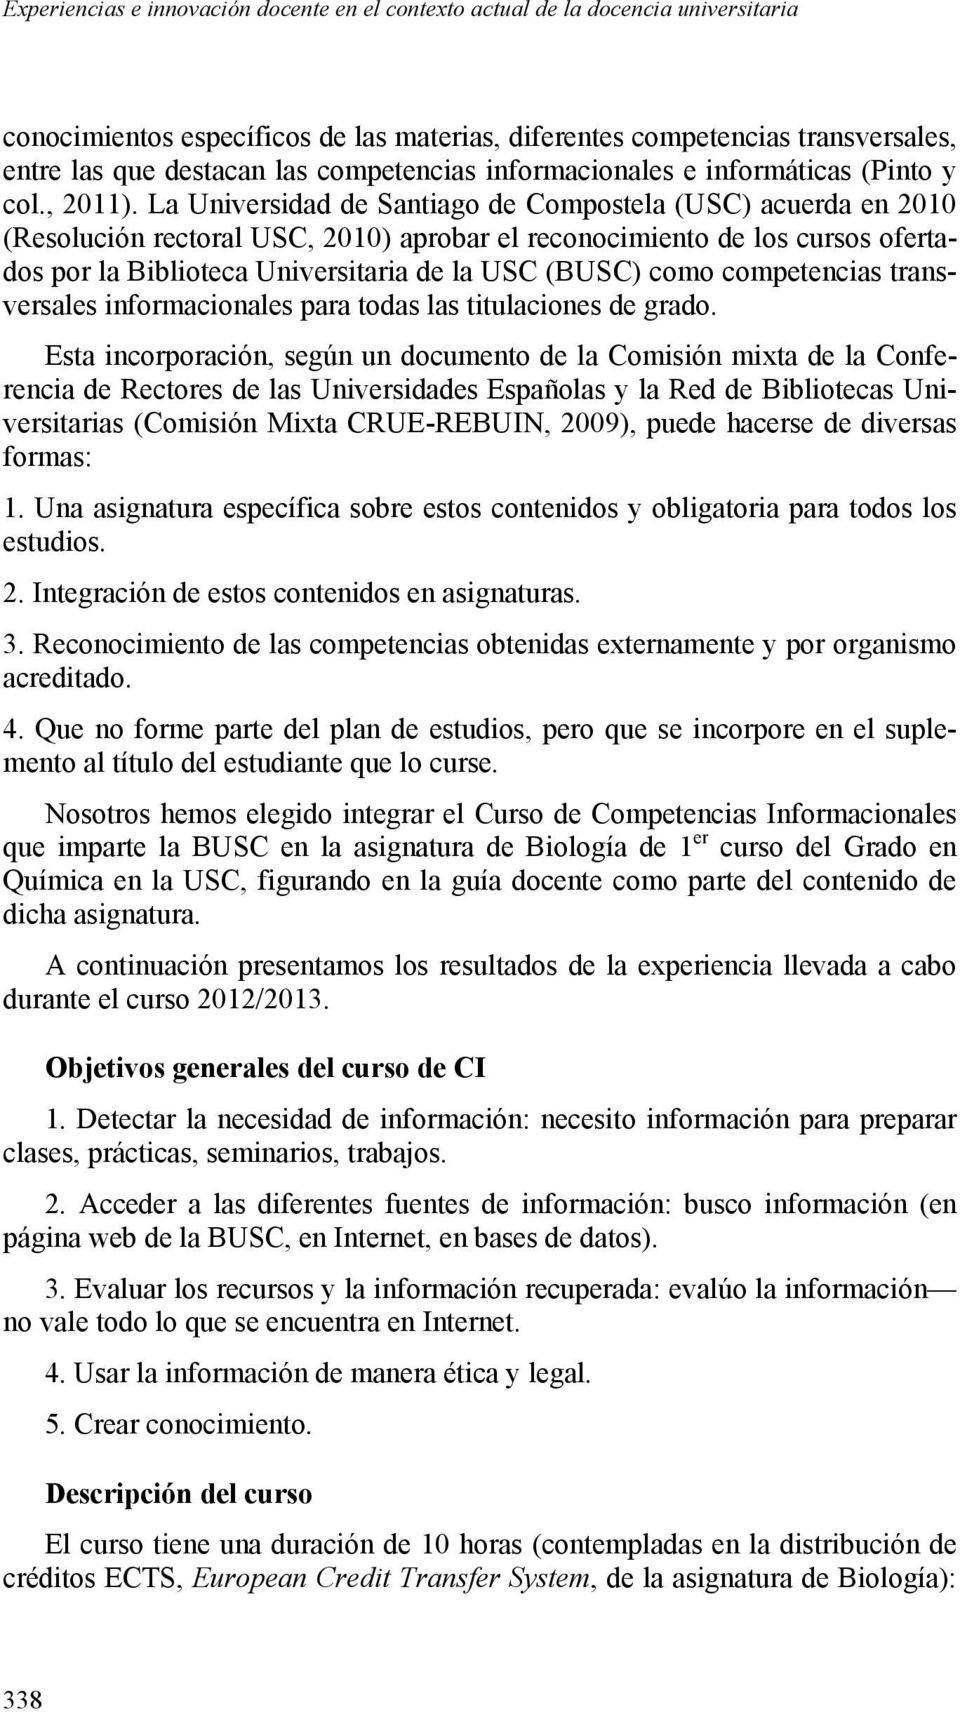 La Universidad de Santiago de Compostela (USC) acuerda en 21 (Resolución rectoral USC, 21) aprobar el reconocimiento de los cursos ofertados por la Biblioteca Universitaria de la USC (BUSC) como